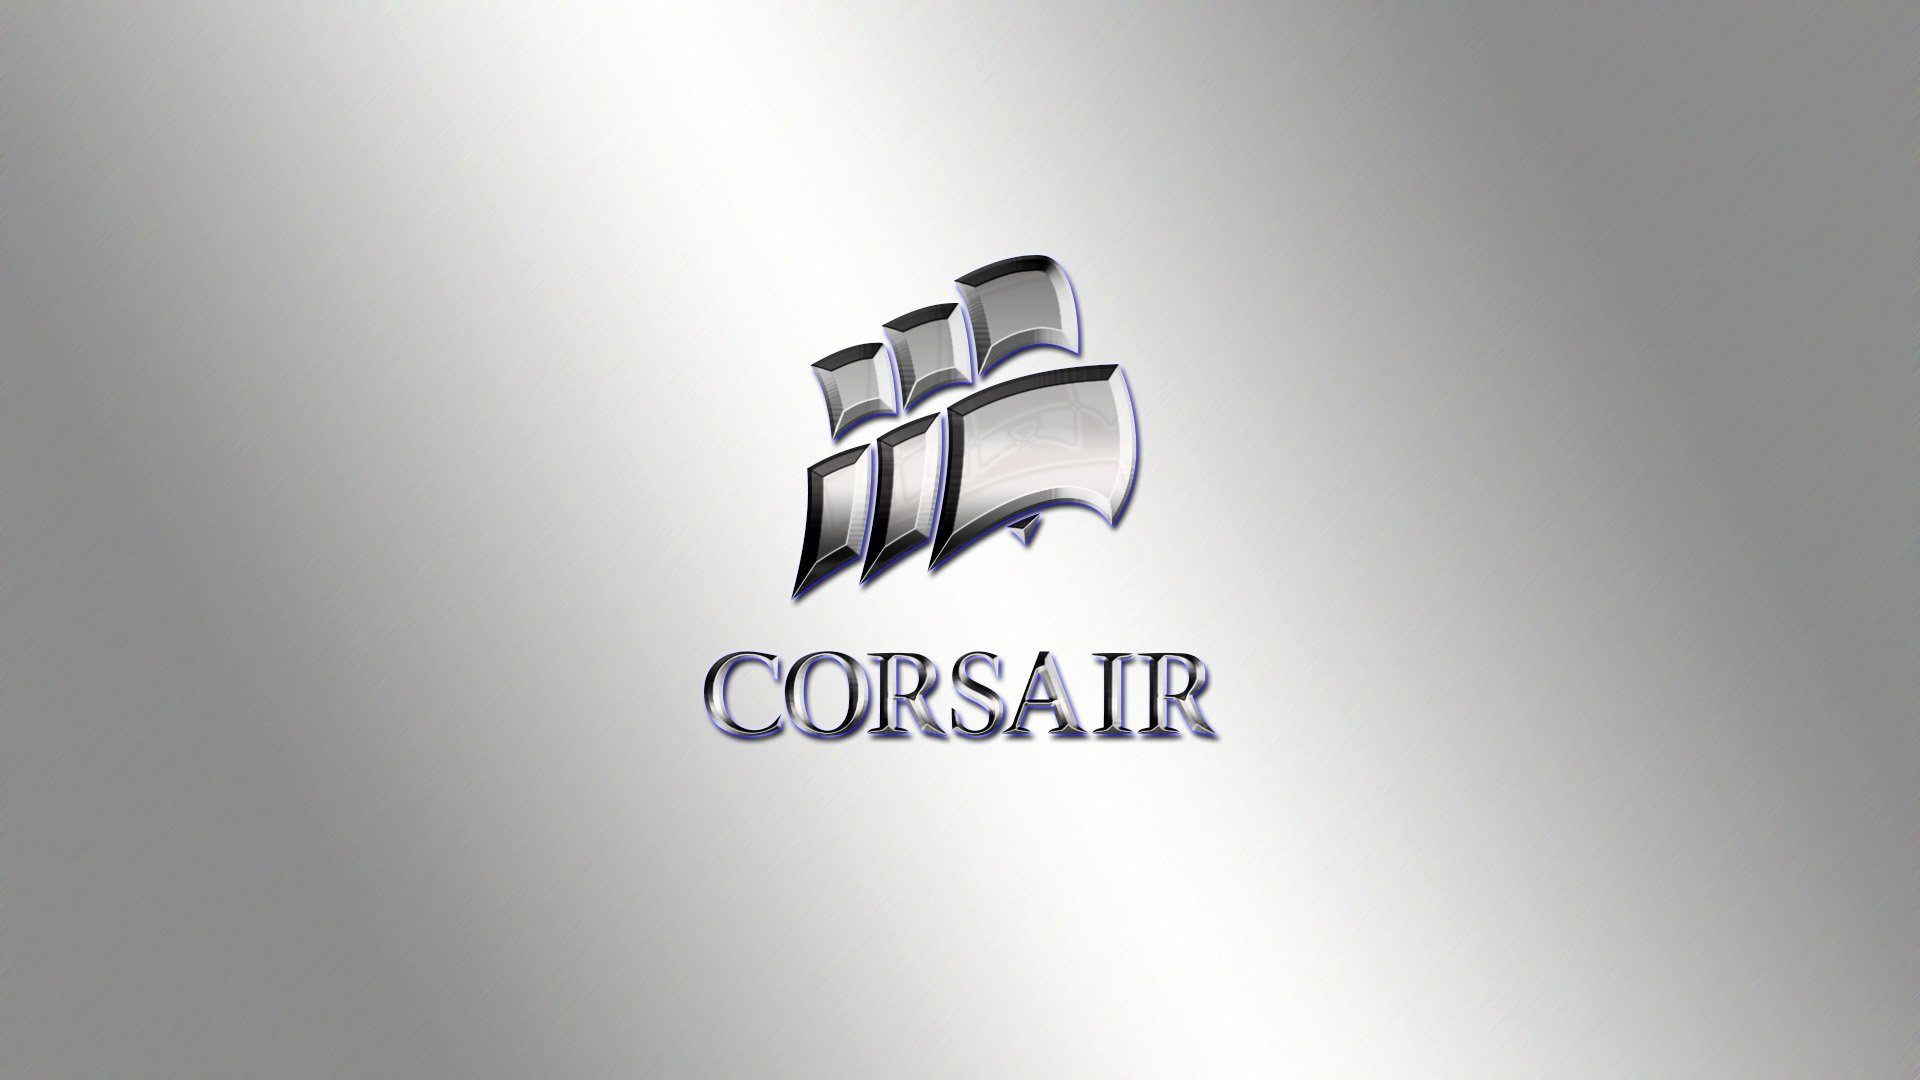 Corsair Gaming Puter Wallpaper